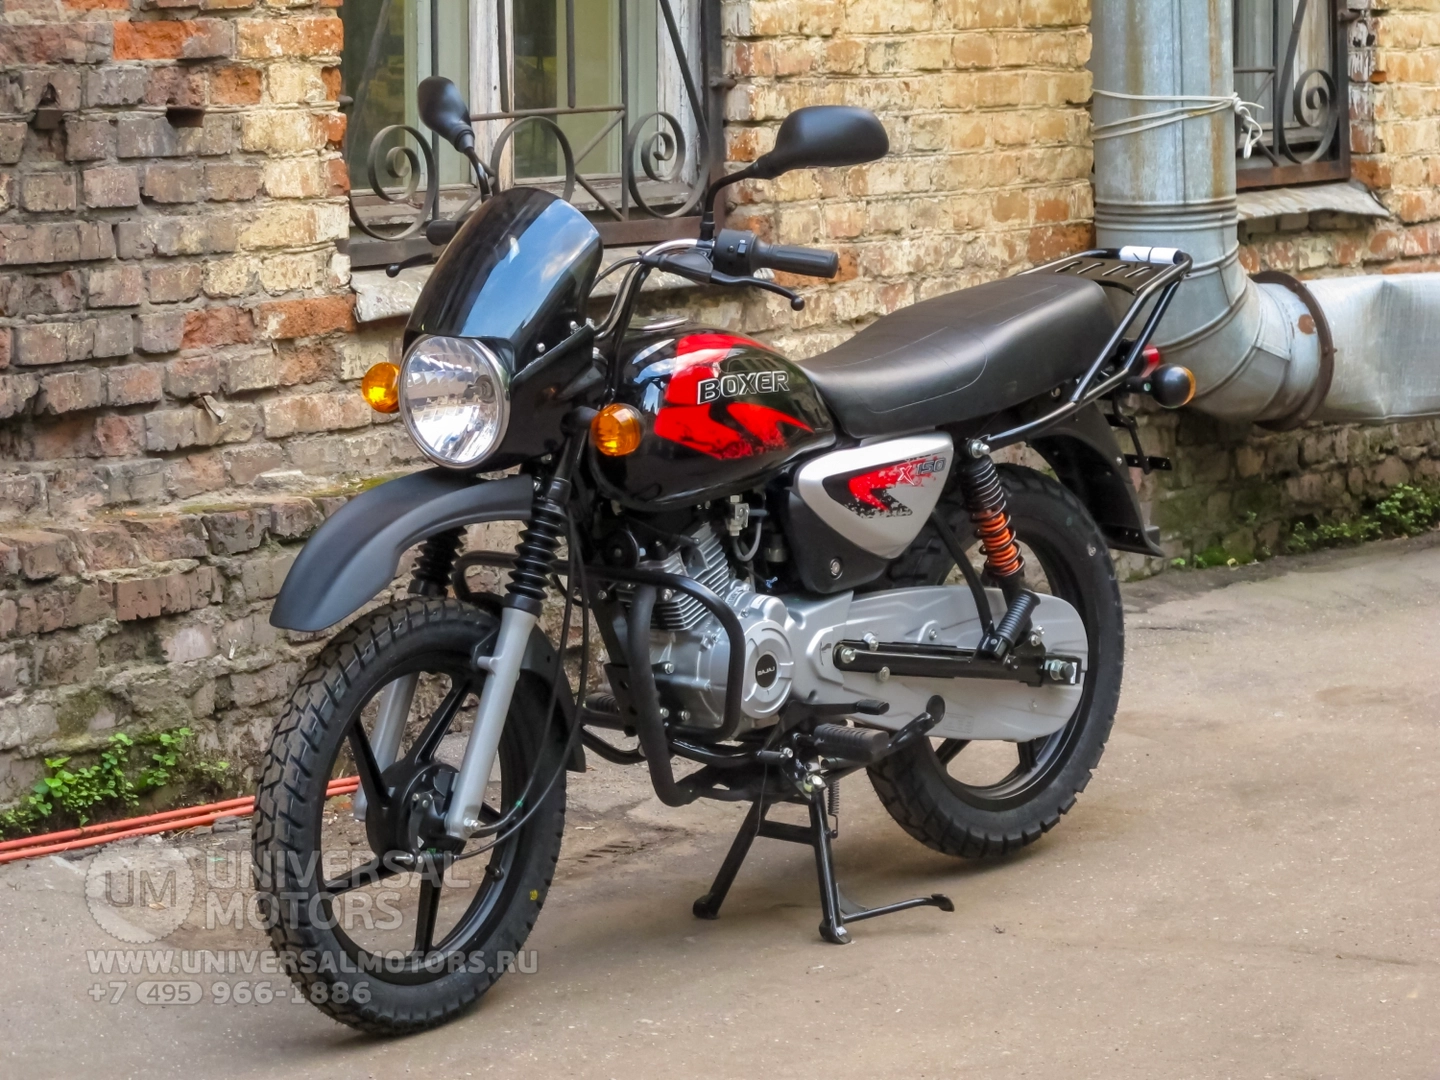 Мотоцикл Bajaj Boxer BM 150 X, 38249949322768884770